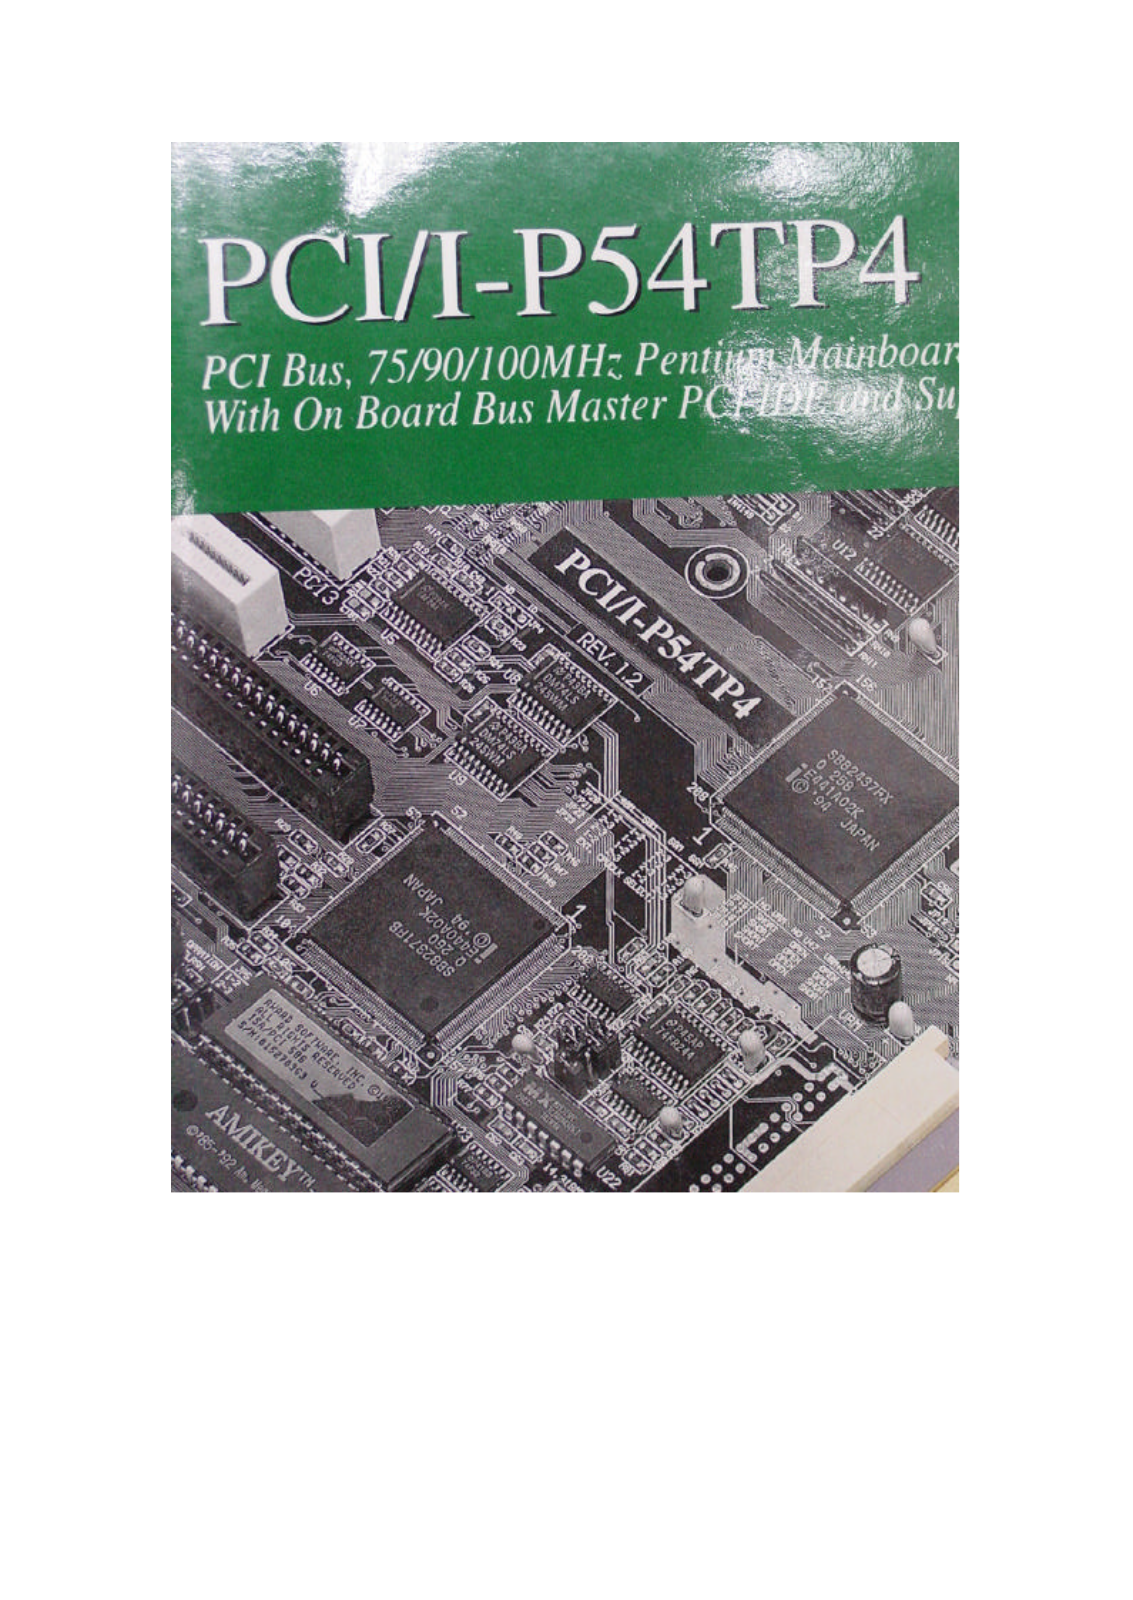 ASUS PCII-P54TP4 User Manual